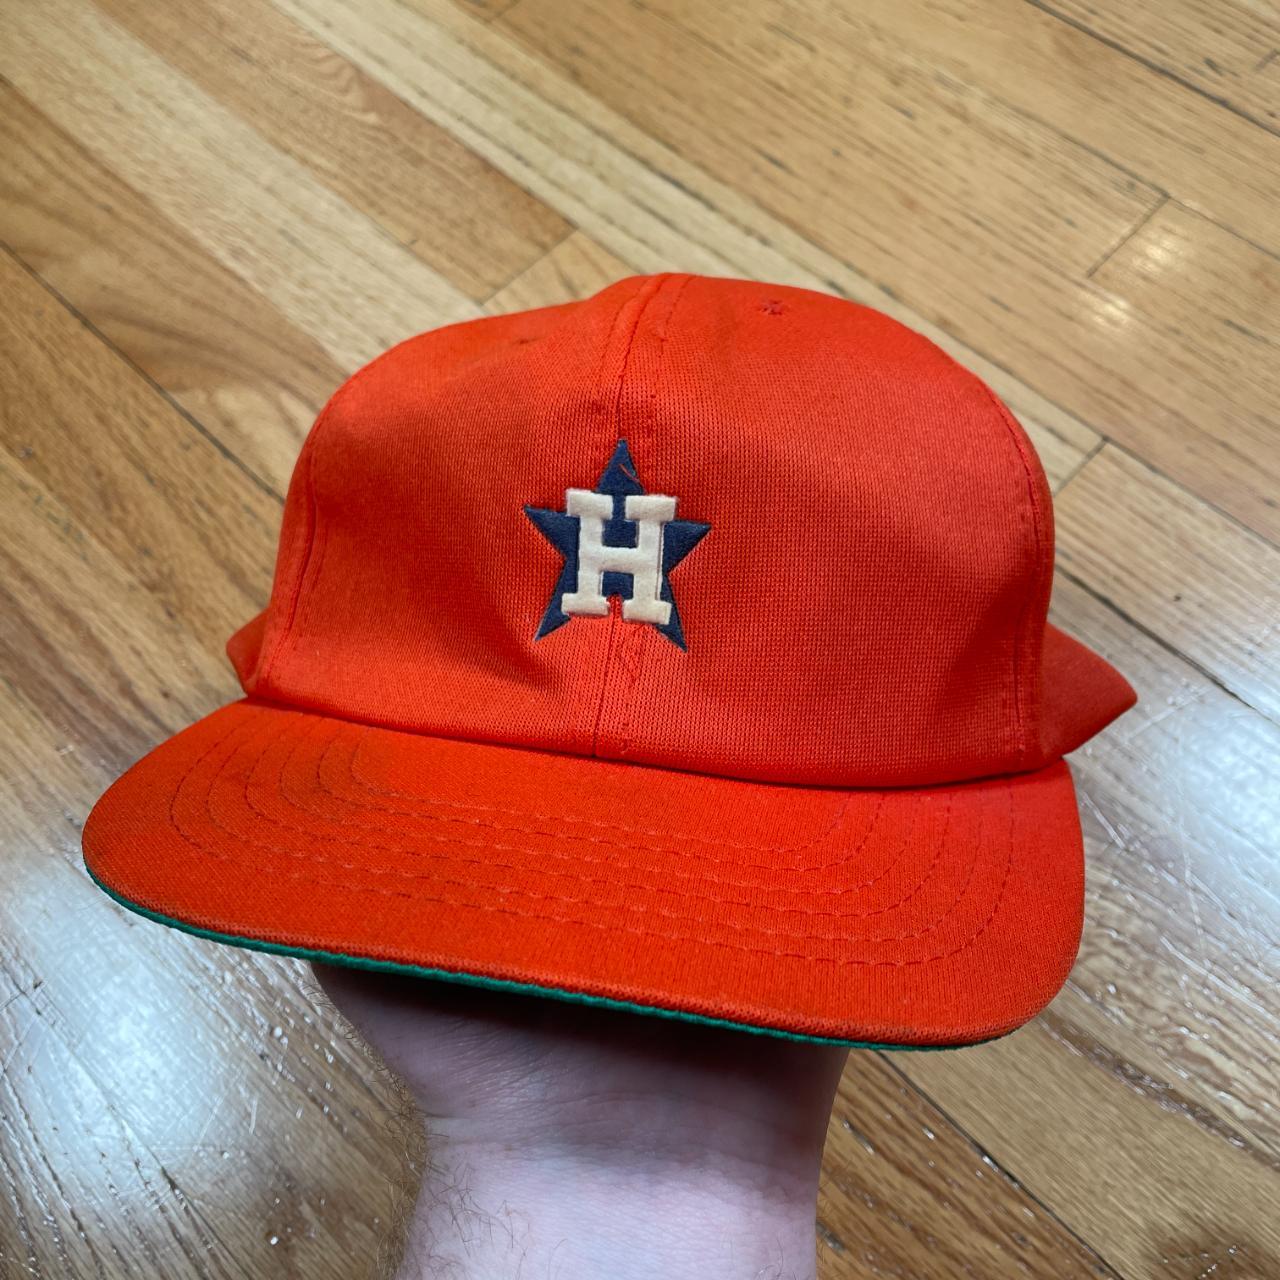 astros orange hat